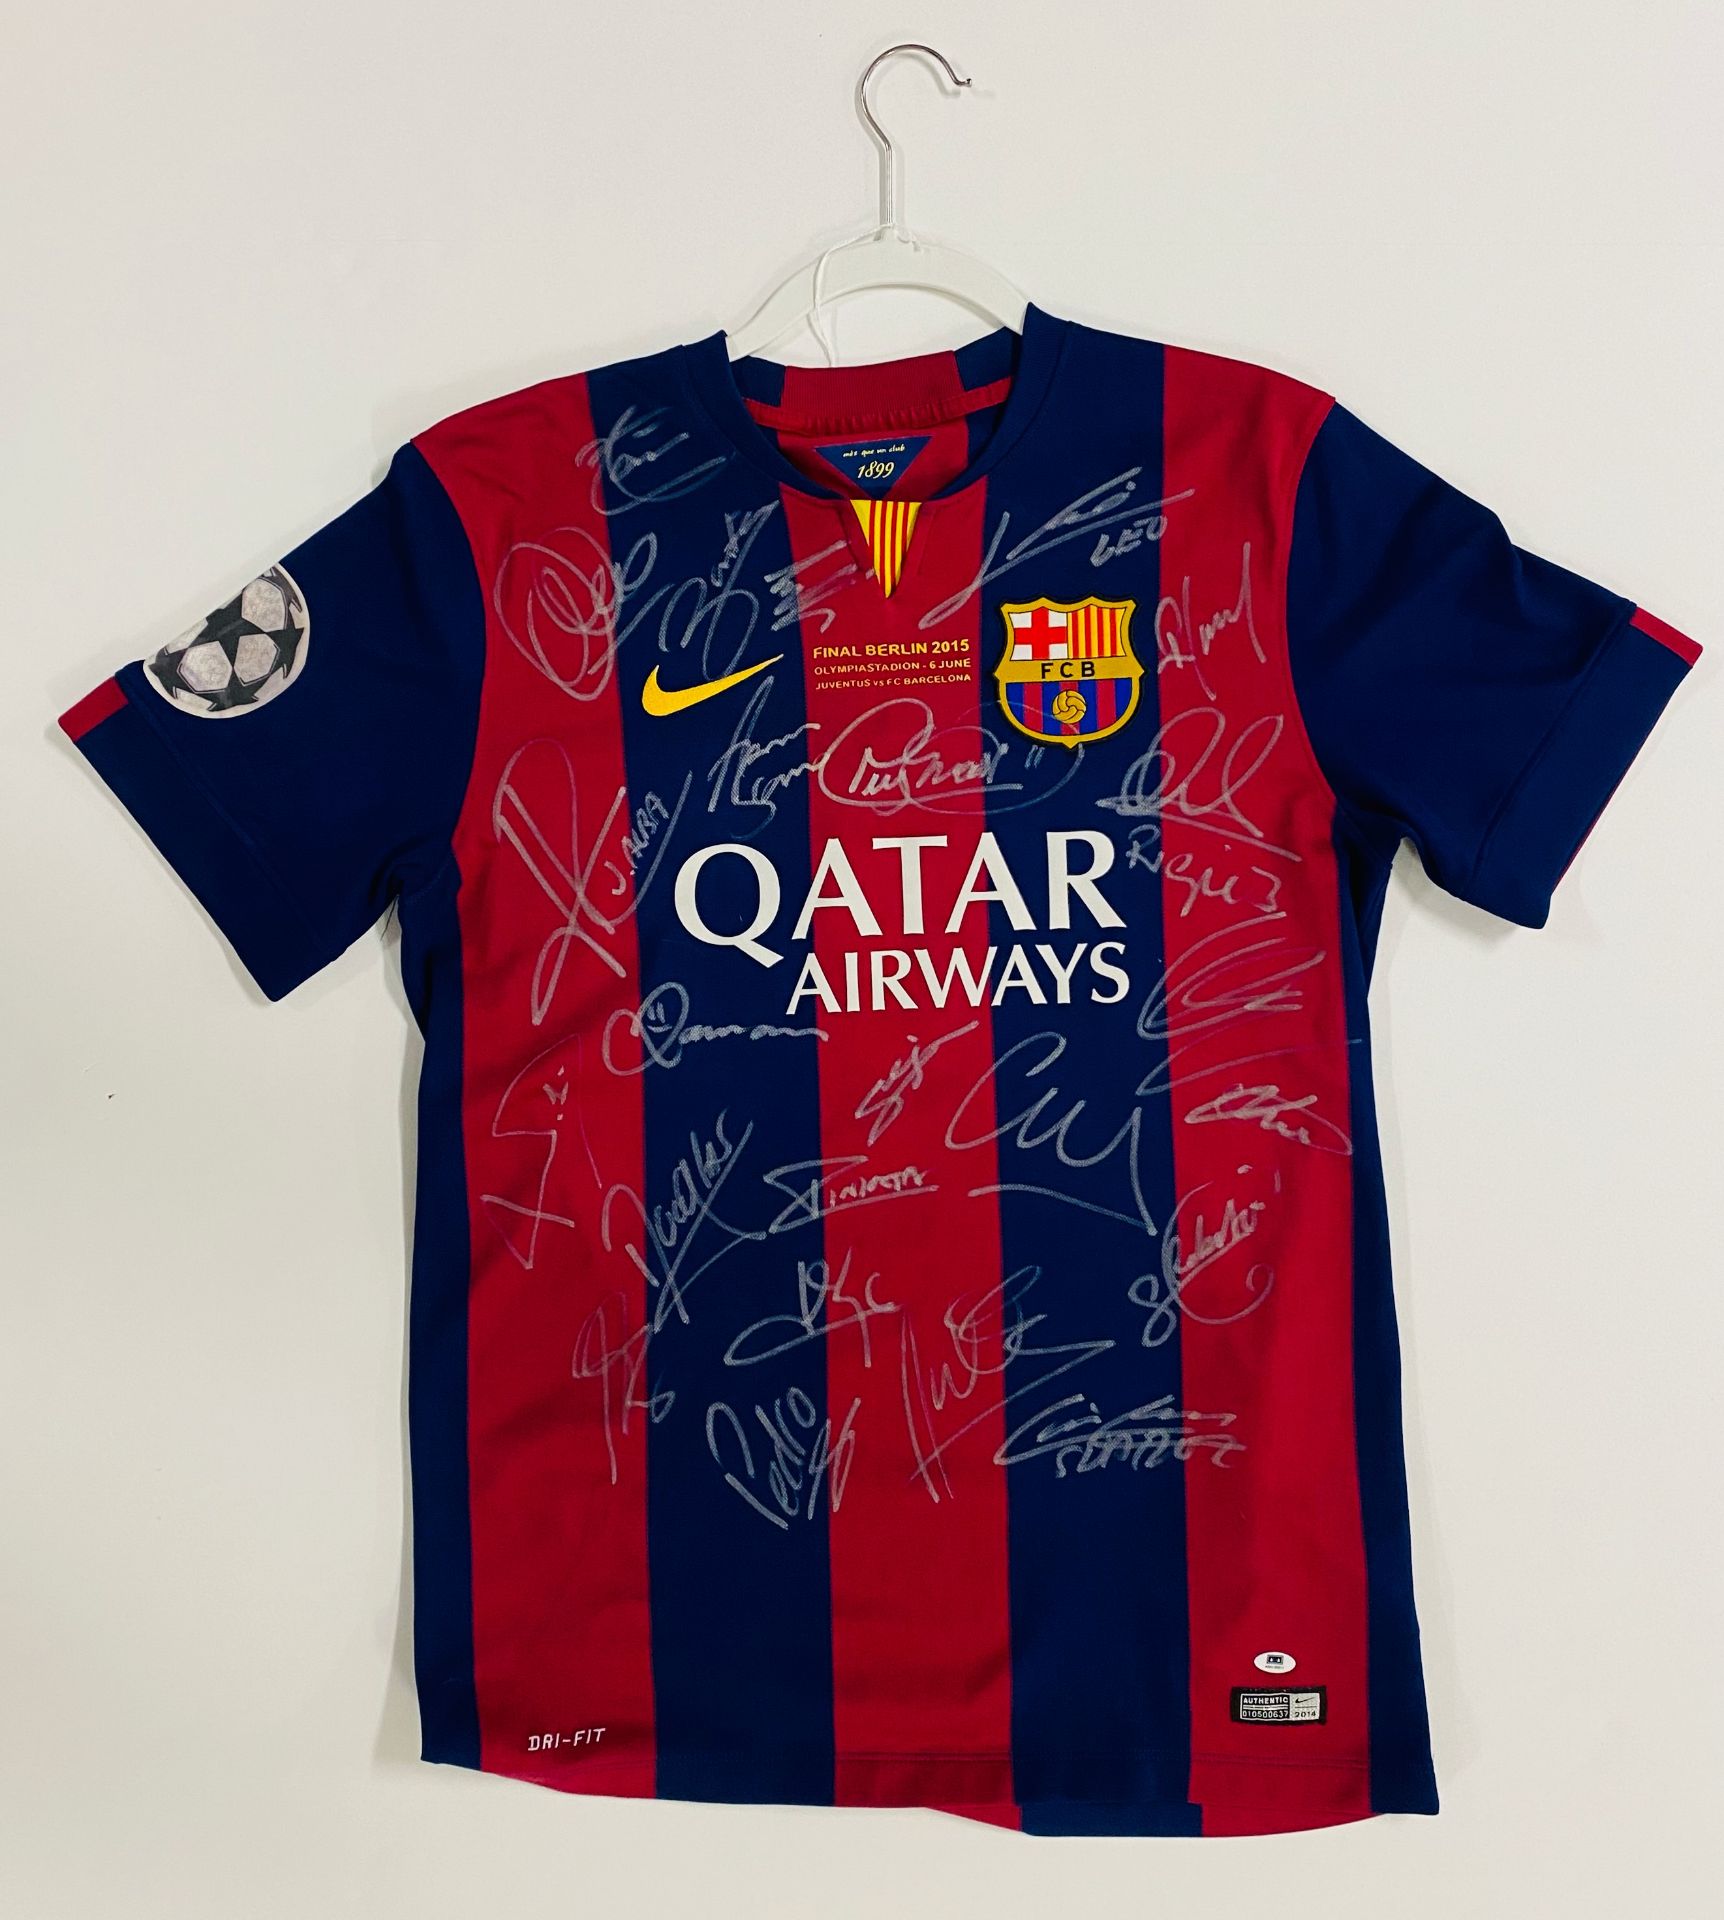 Barcelona 2014/2015 treble winners signed jersey